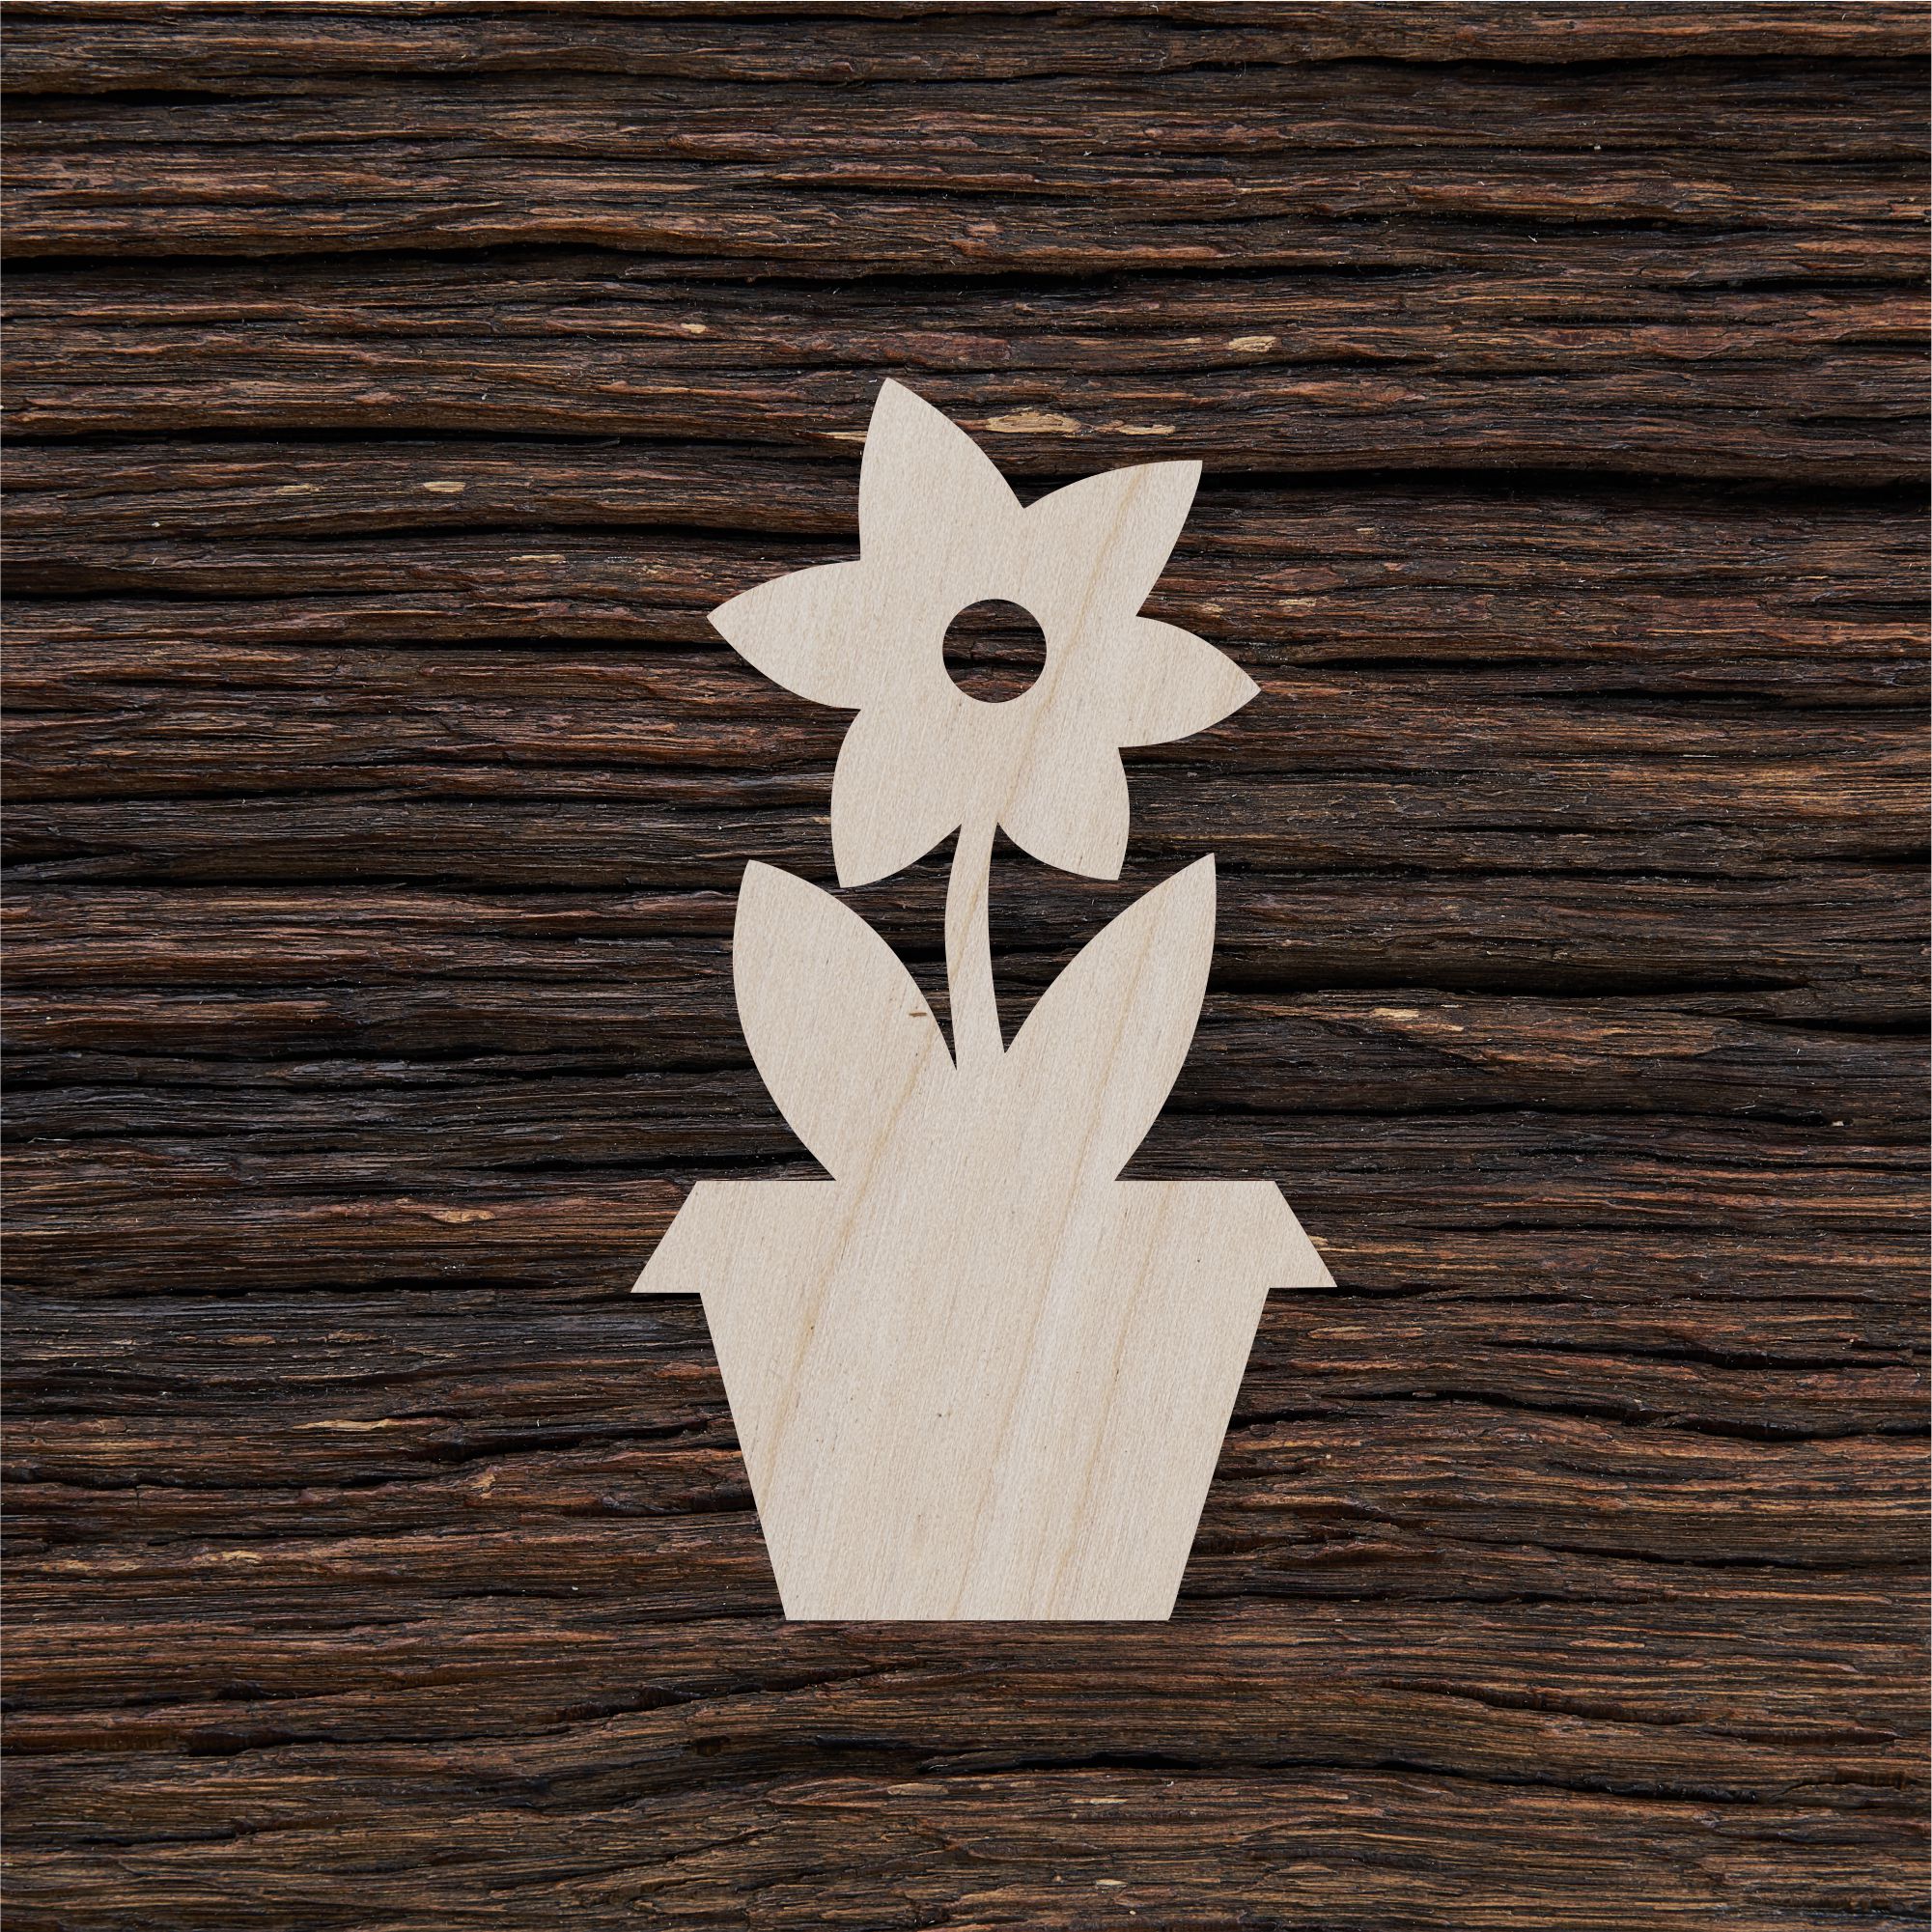 6Vazoninė gėlė - medinis gaminys, pjautas lazeriu - dekoravimui ir dažymui